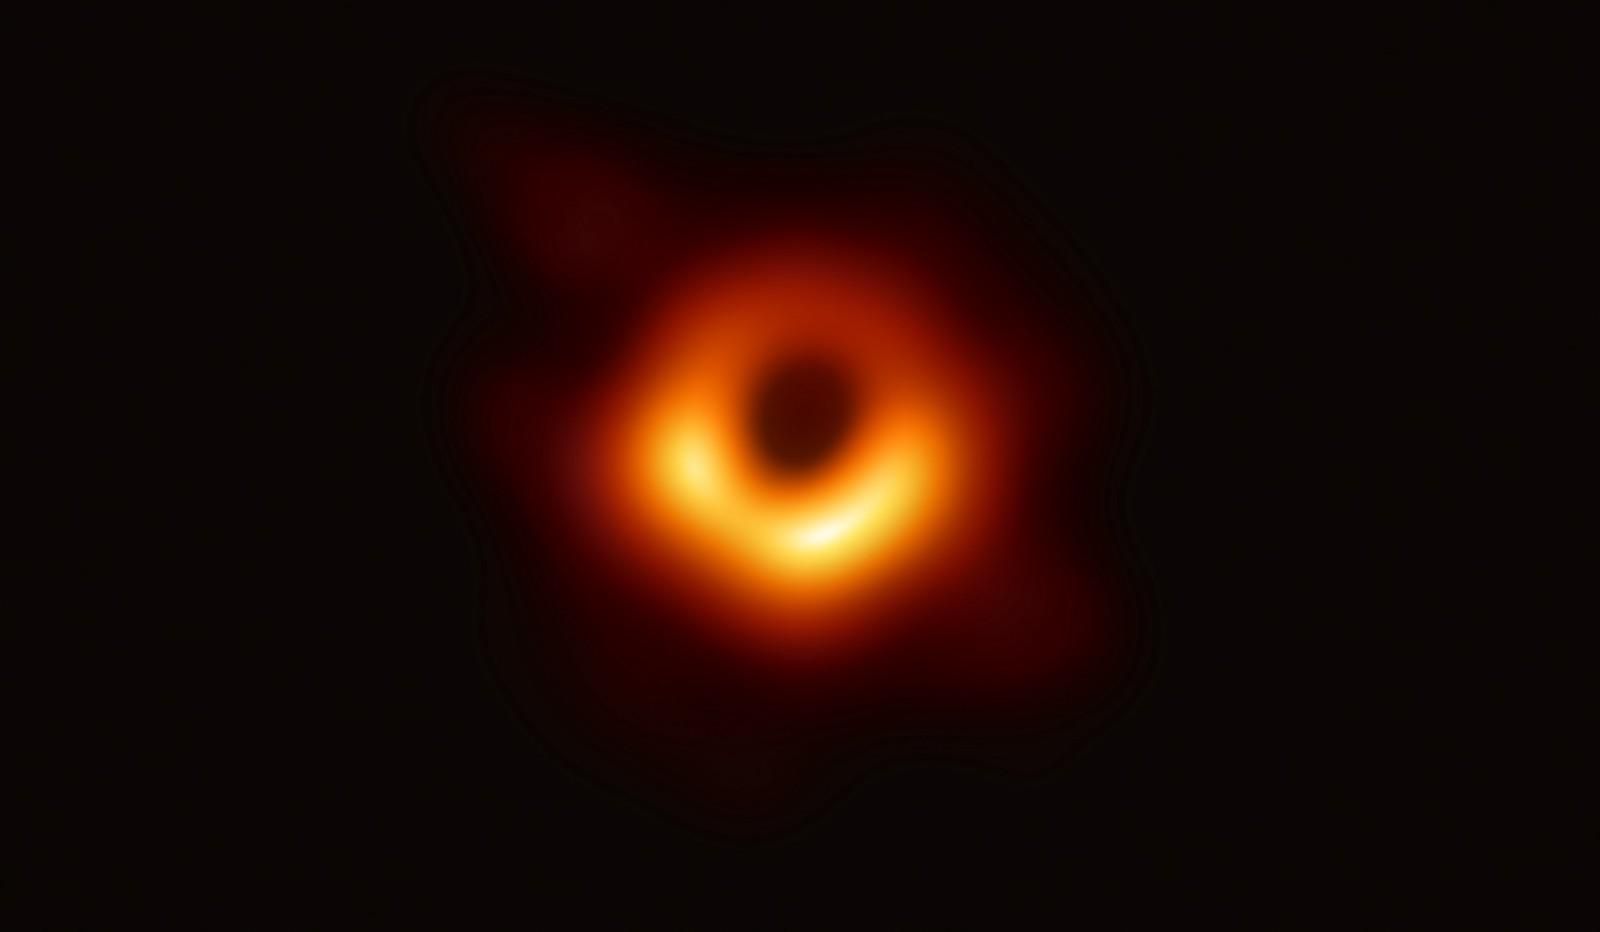 Ученые уже дали имя черной дыре, фото которой сделали недавно